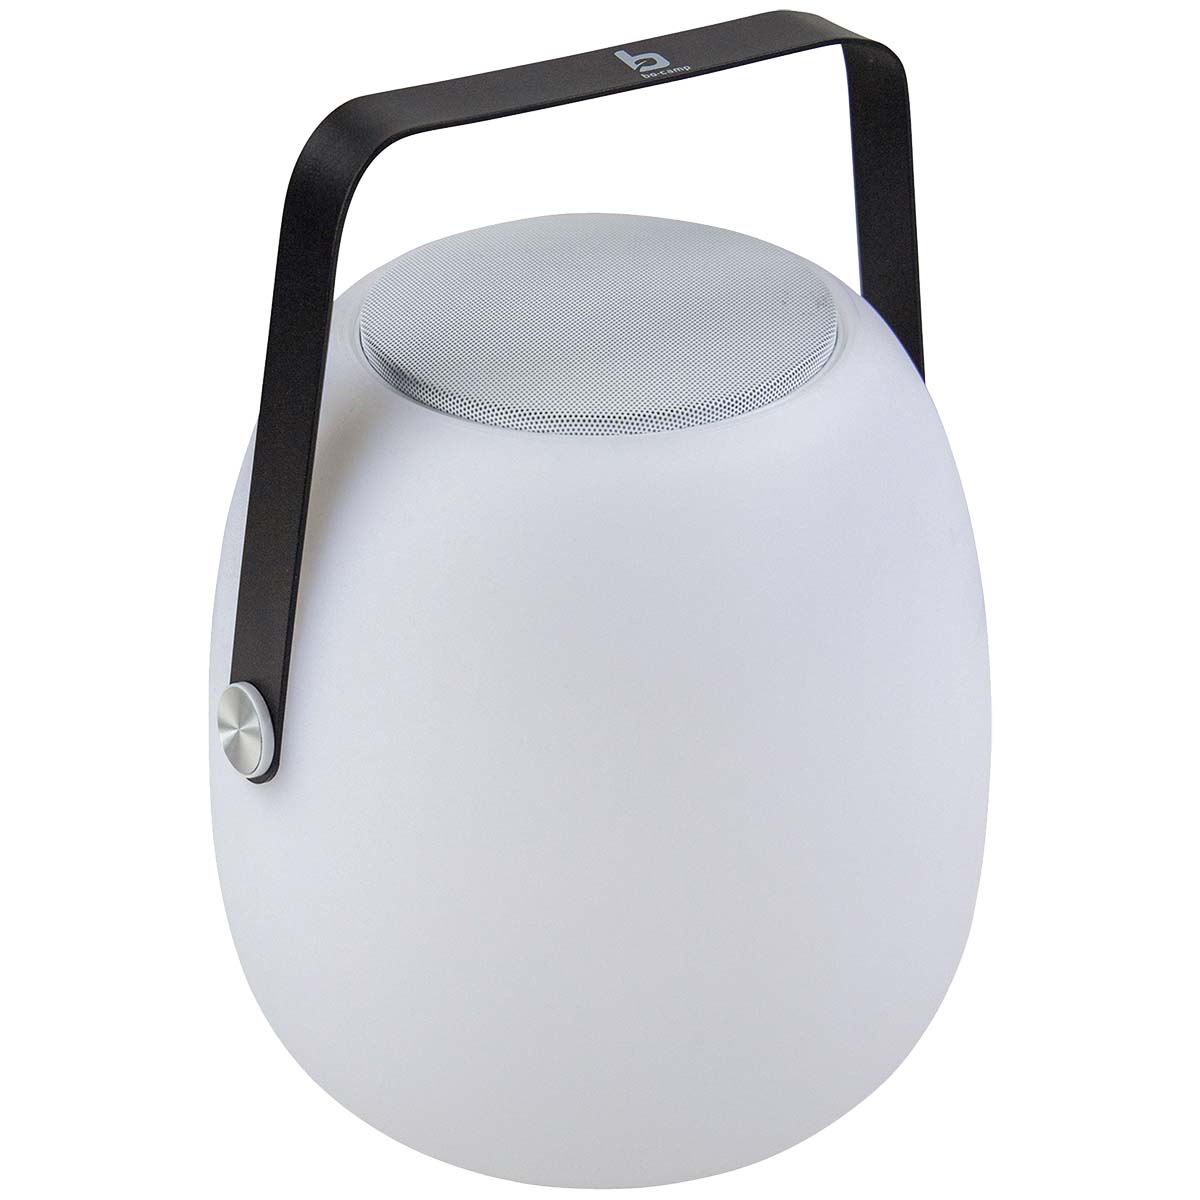 5818613 Een sfeervolle oplaadbare tafellamp met ingebouwde speaker. Zo kan je licht en geluid combineren! De lamp en speaker kunnen ook afzonderlijk van elkaar gebruikt worden. De lamp geeft een prettig licht door de warme witte LED verlichting. De ingebouwde accu kan worden opgeladen met een meegeleverde USB kabel. Ideaal voor op een tafel of kastje.